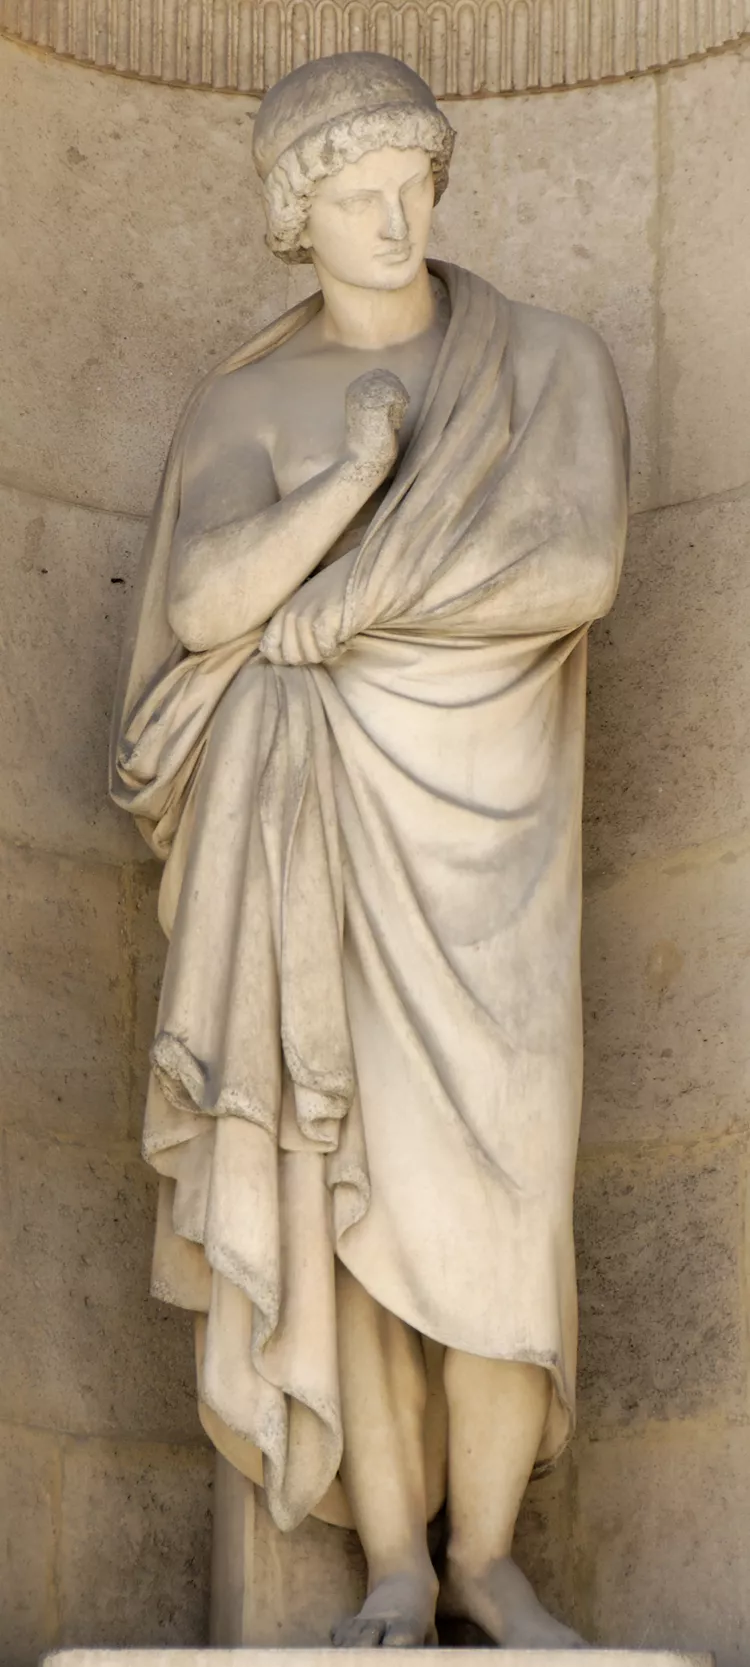 مجسمه آریستارخوس در کاخ لوور پاریس.